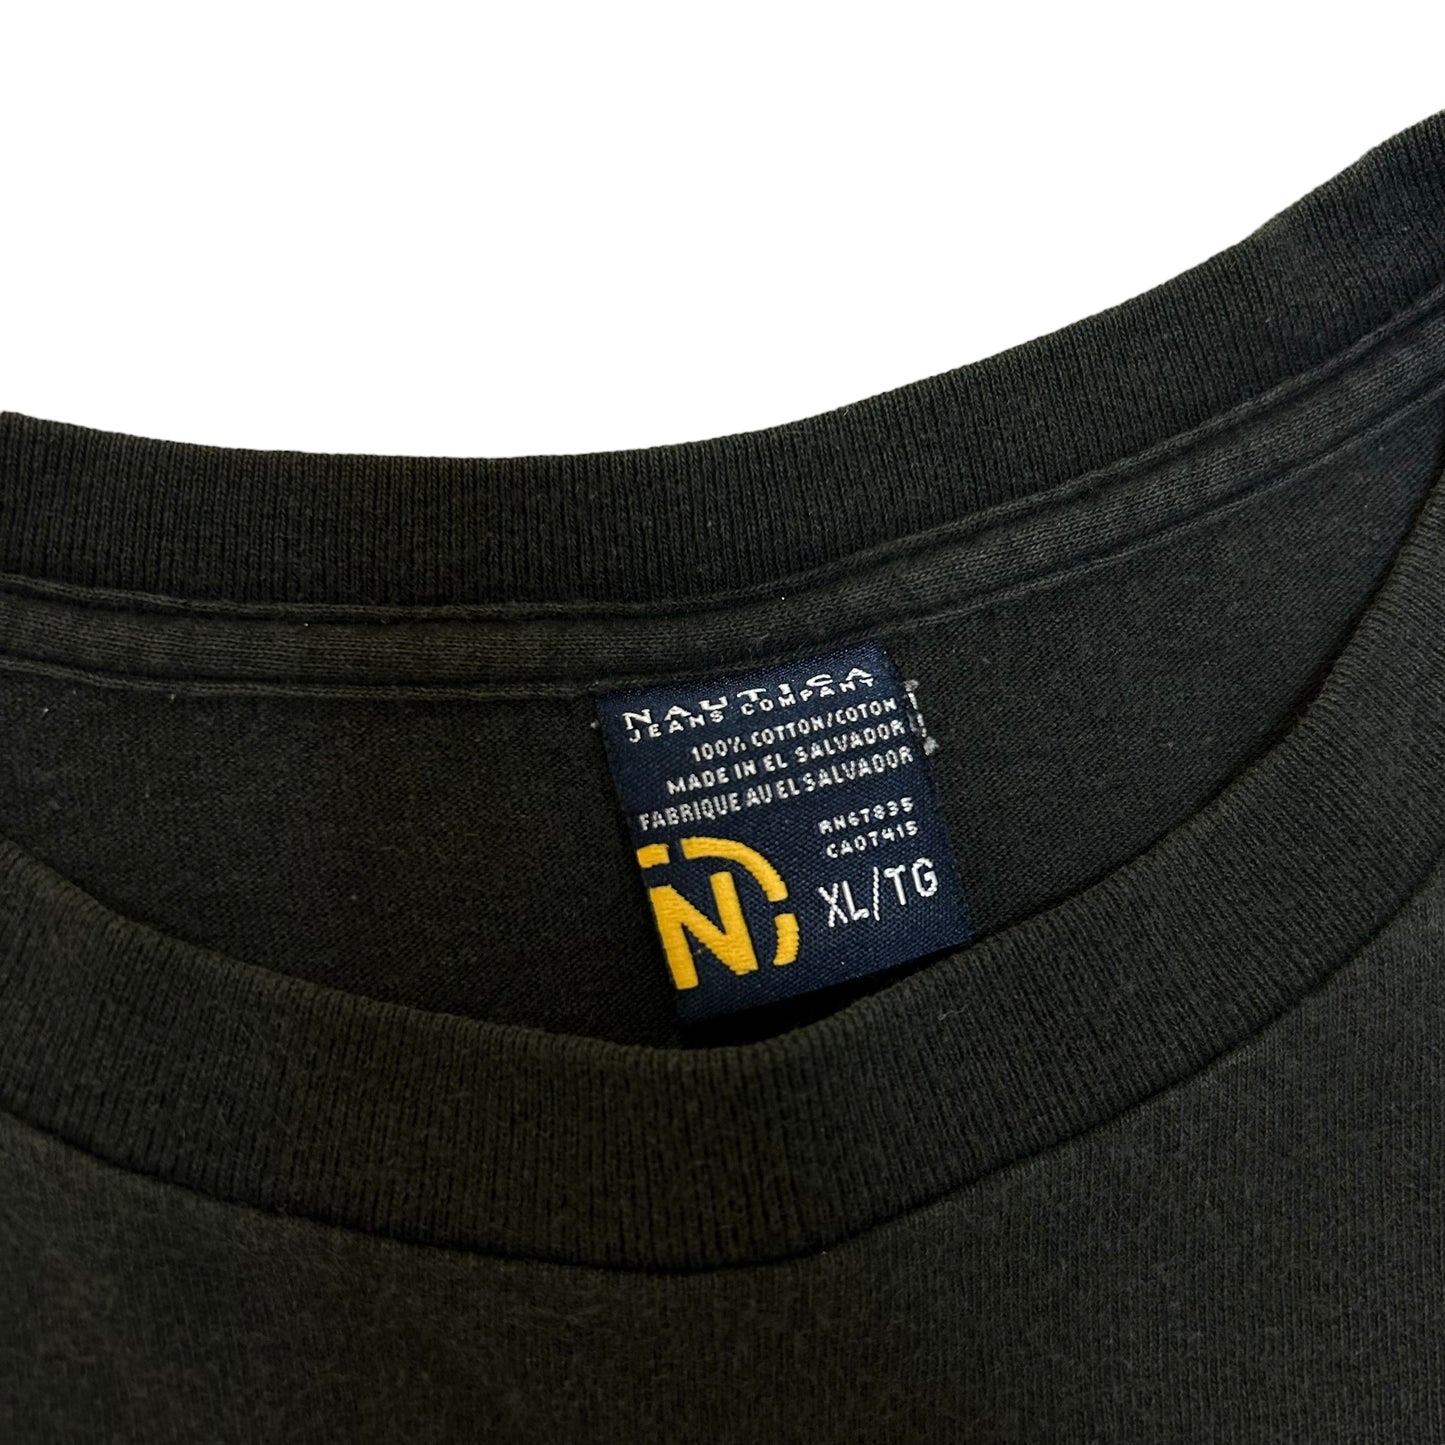 Vintage Y2K Nautica Jeans Black Graphic T-Shirt - Size XL